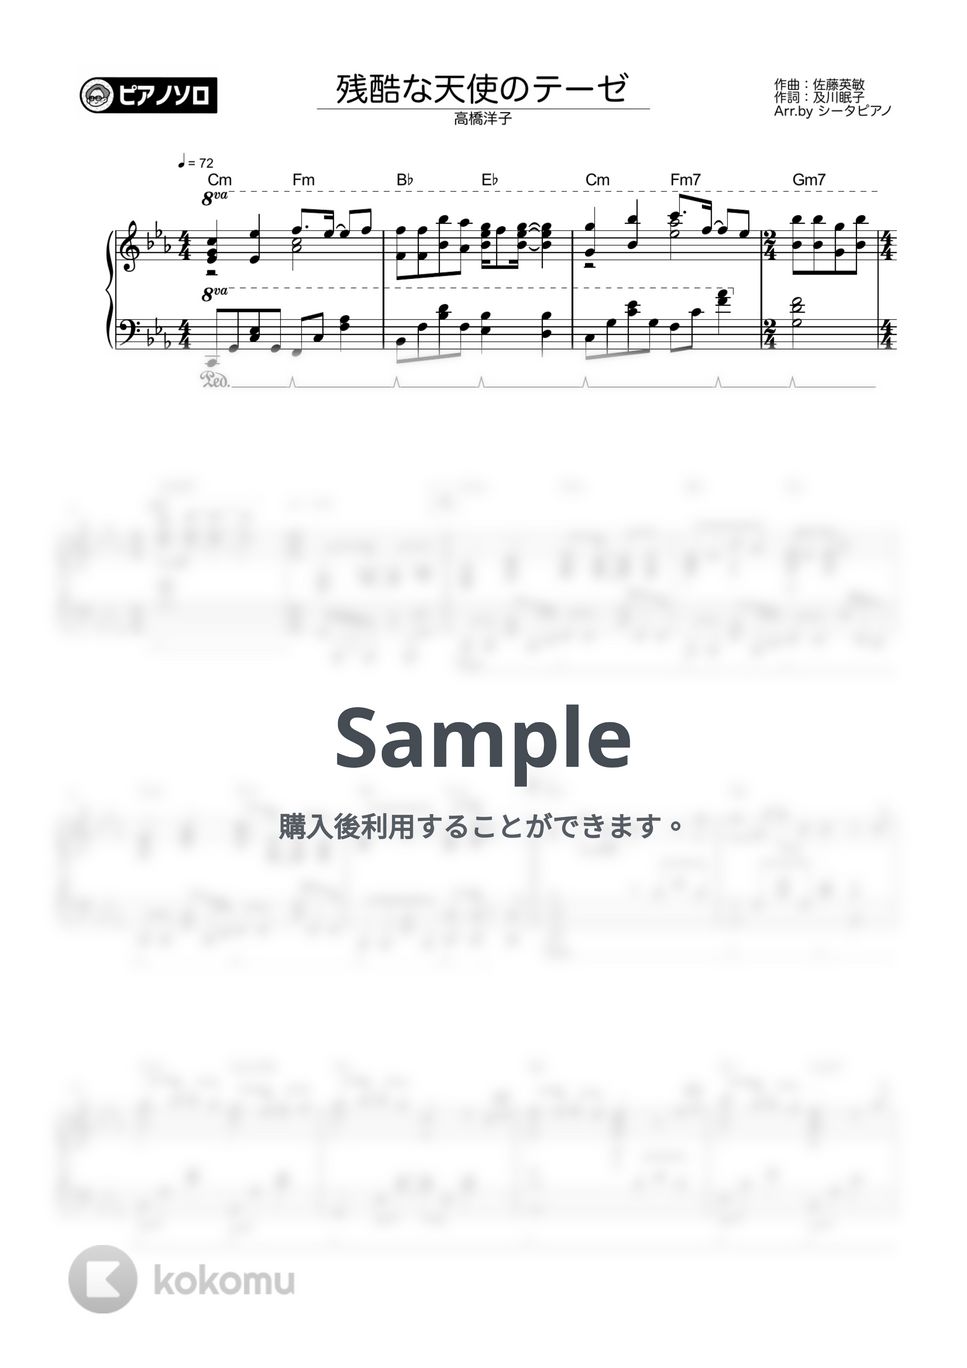 高橋洋子 - 残酷な天使のテーゼ by シータピアノ